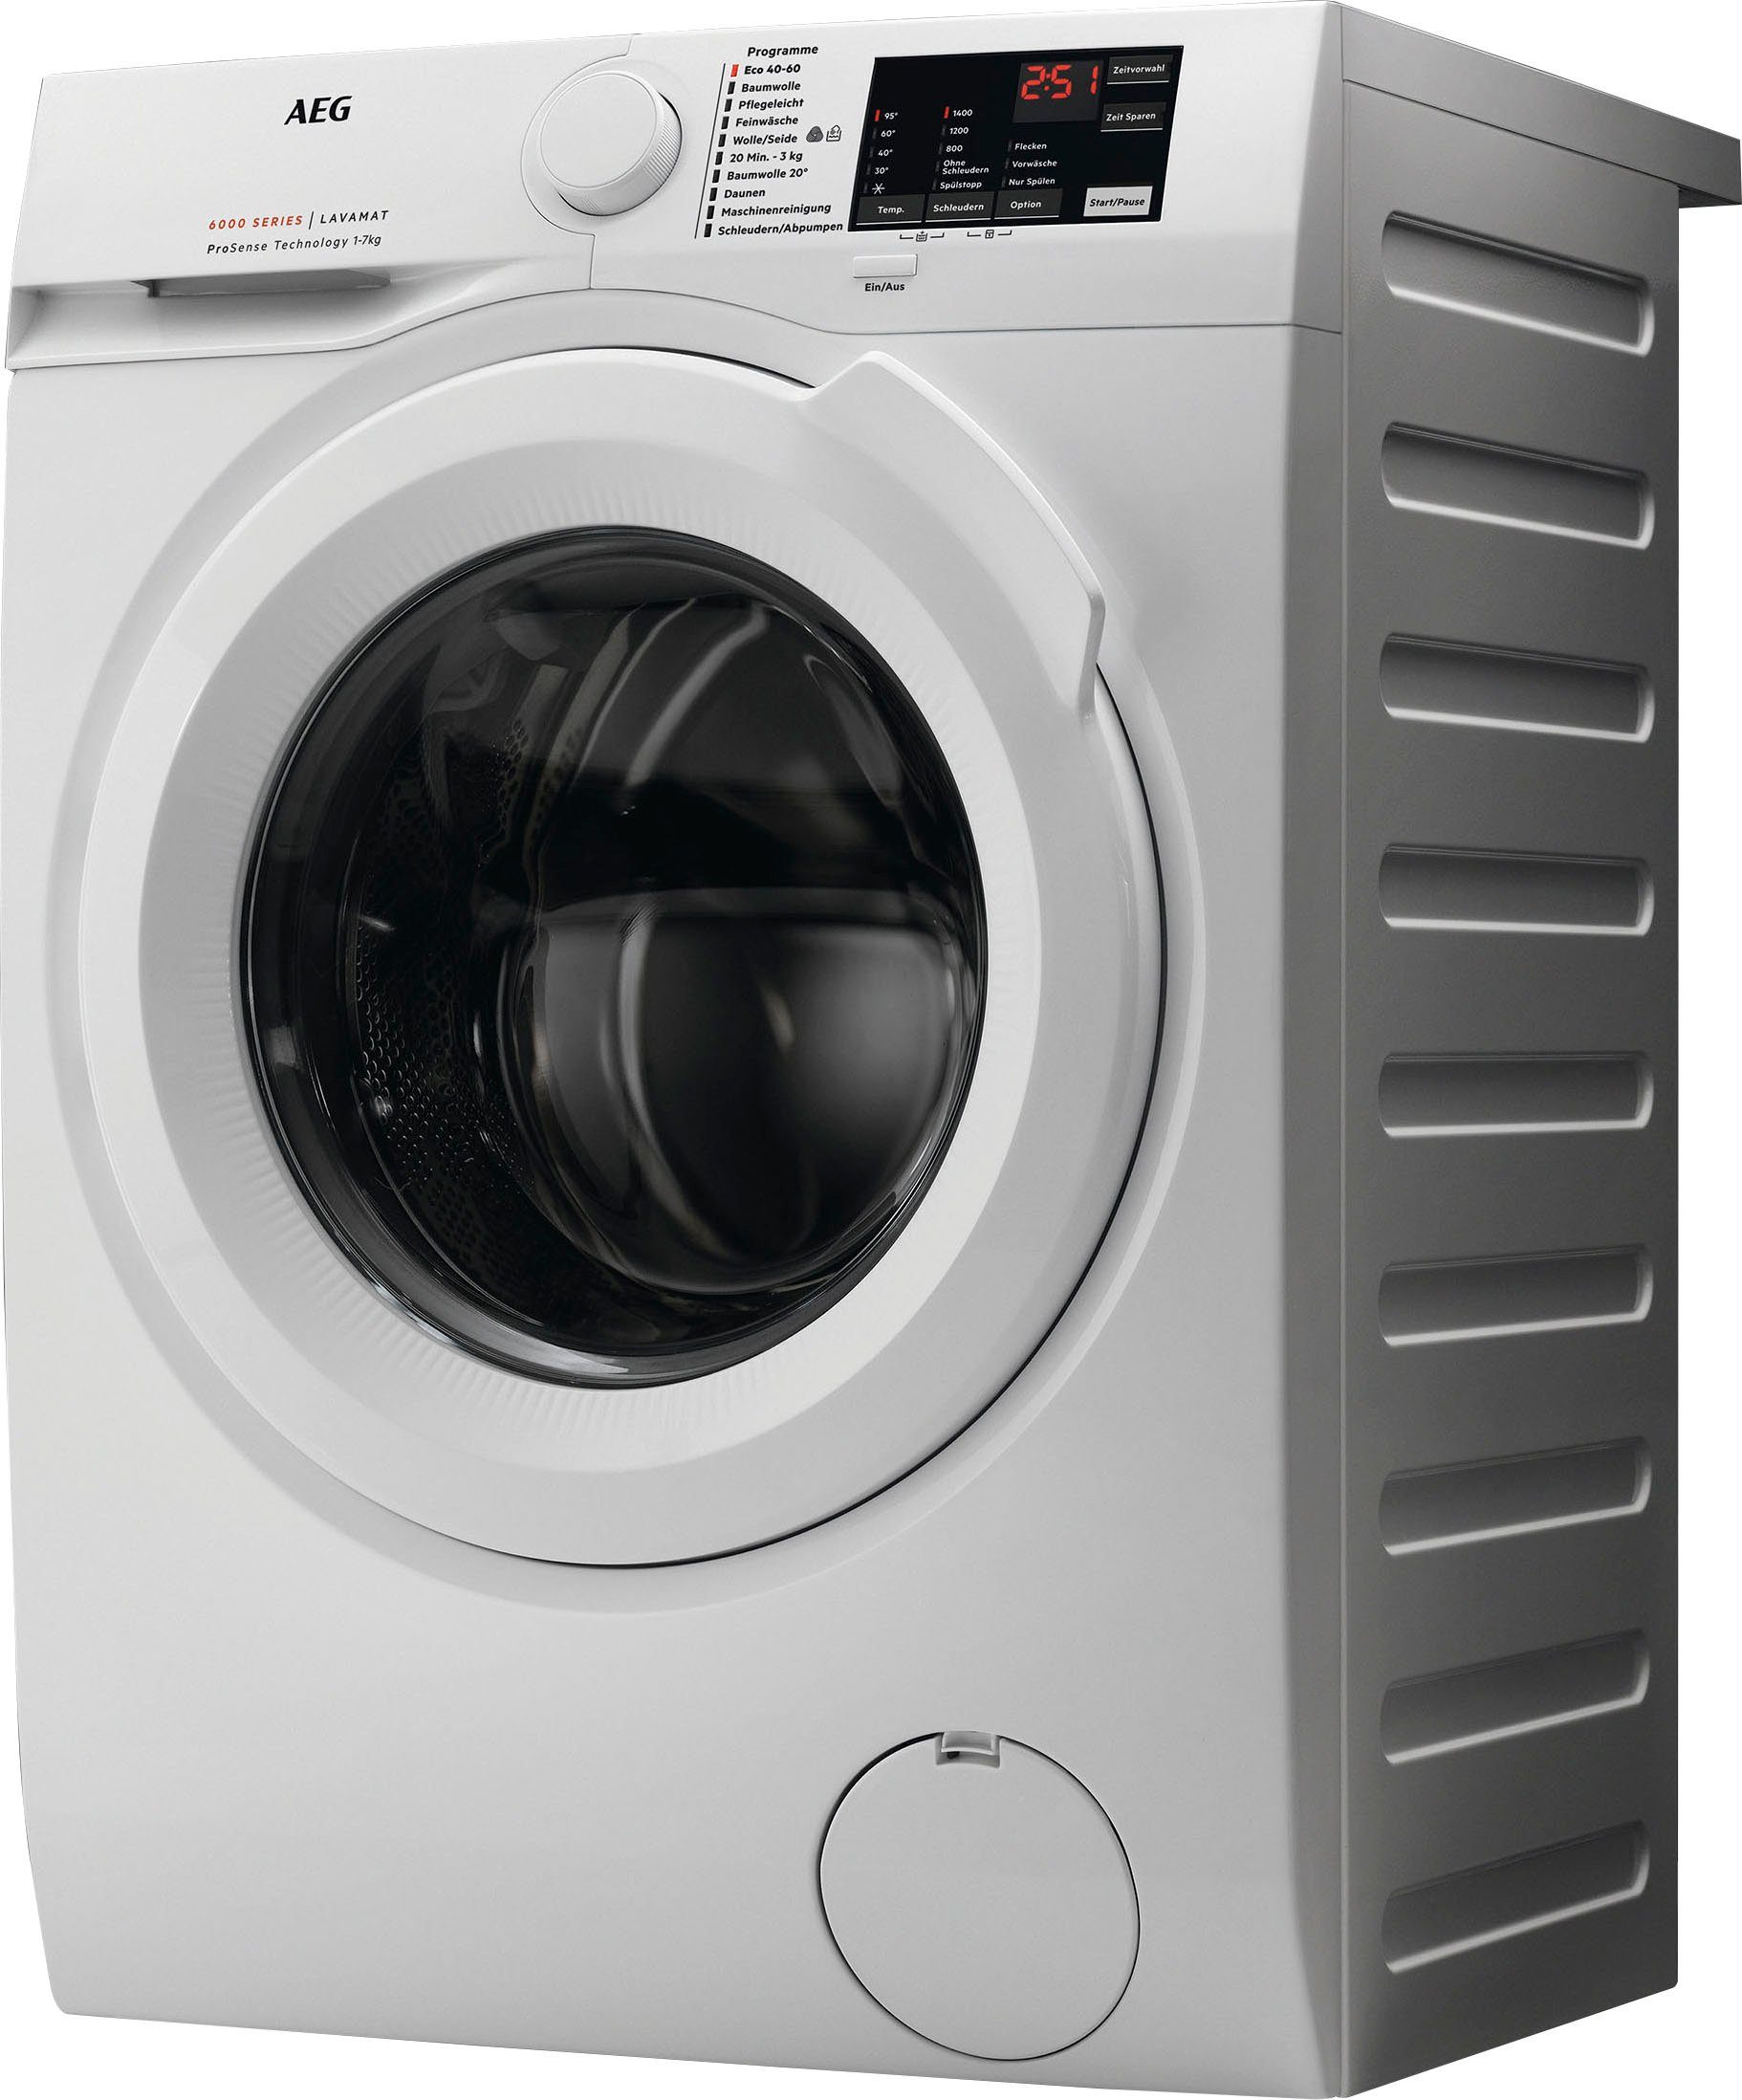 Anti-Allergie Waschmaschine U/min, kg, Dampf 9 Programm L6FBA50490, Hygiene-/ mit AEG 1400